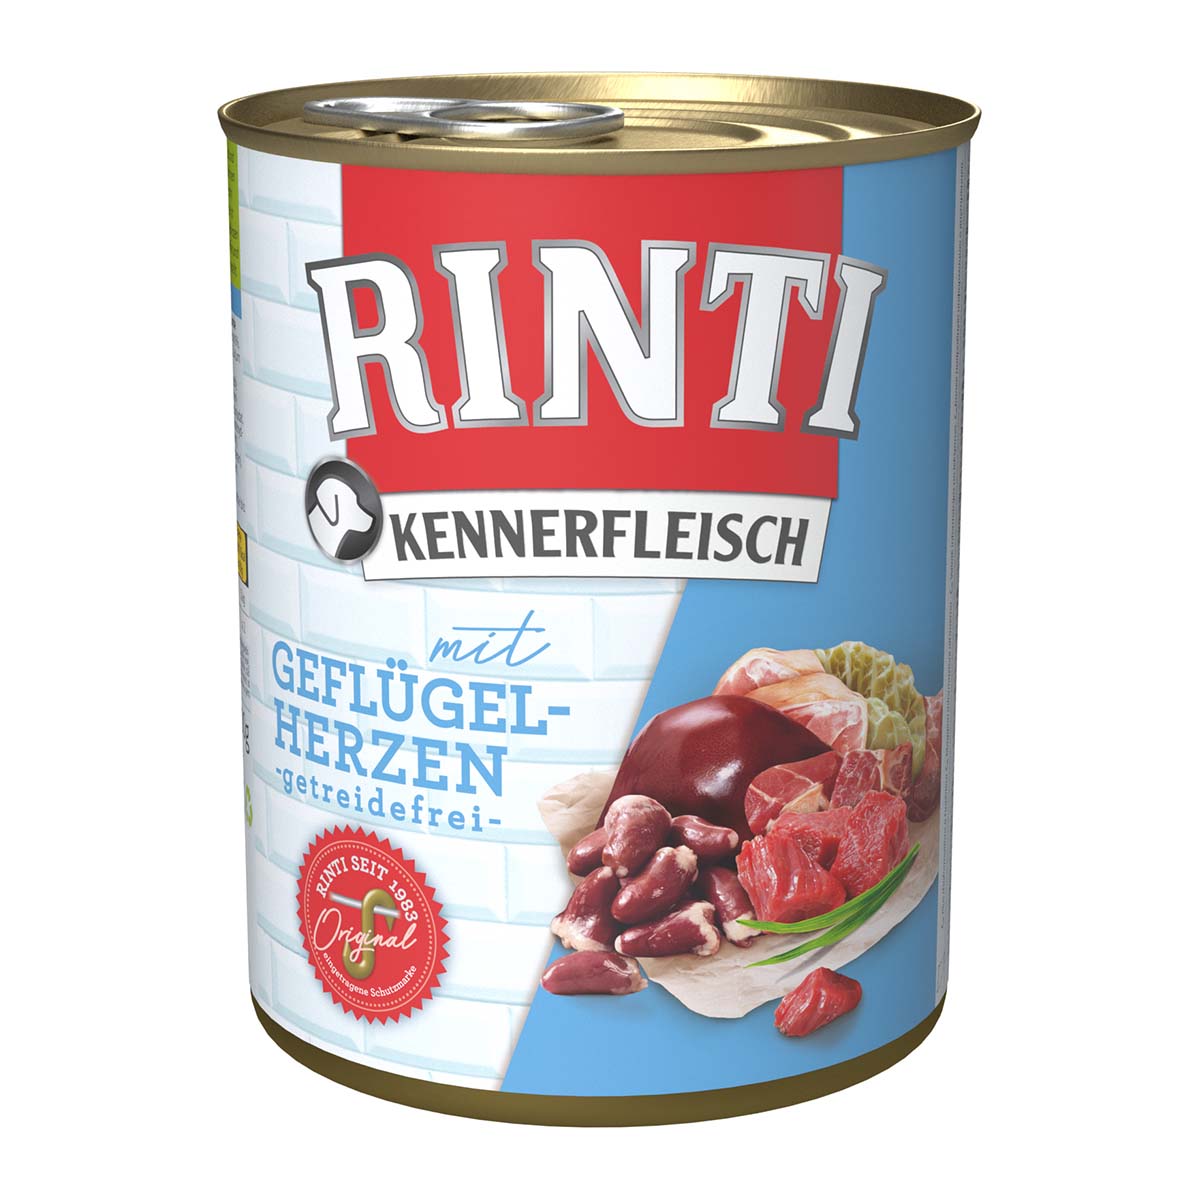 Rinti Kennerfleisch mit Geflügelherzen 24x800g